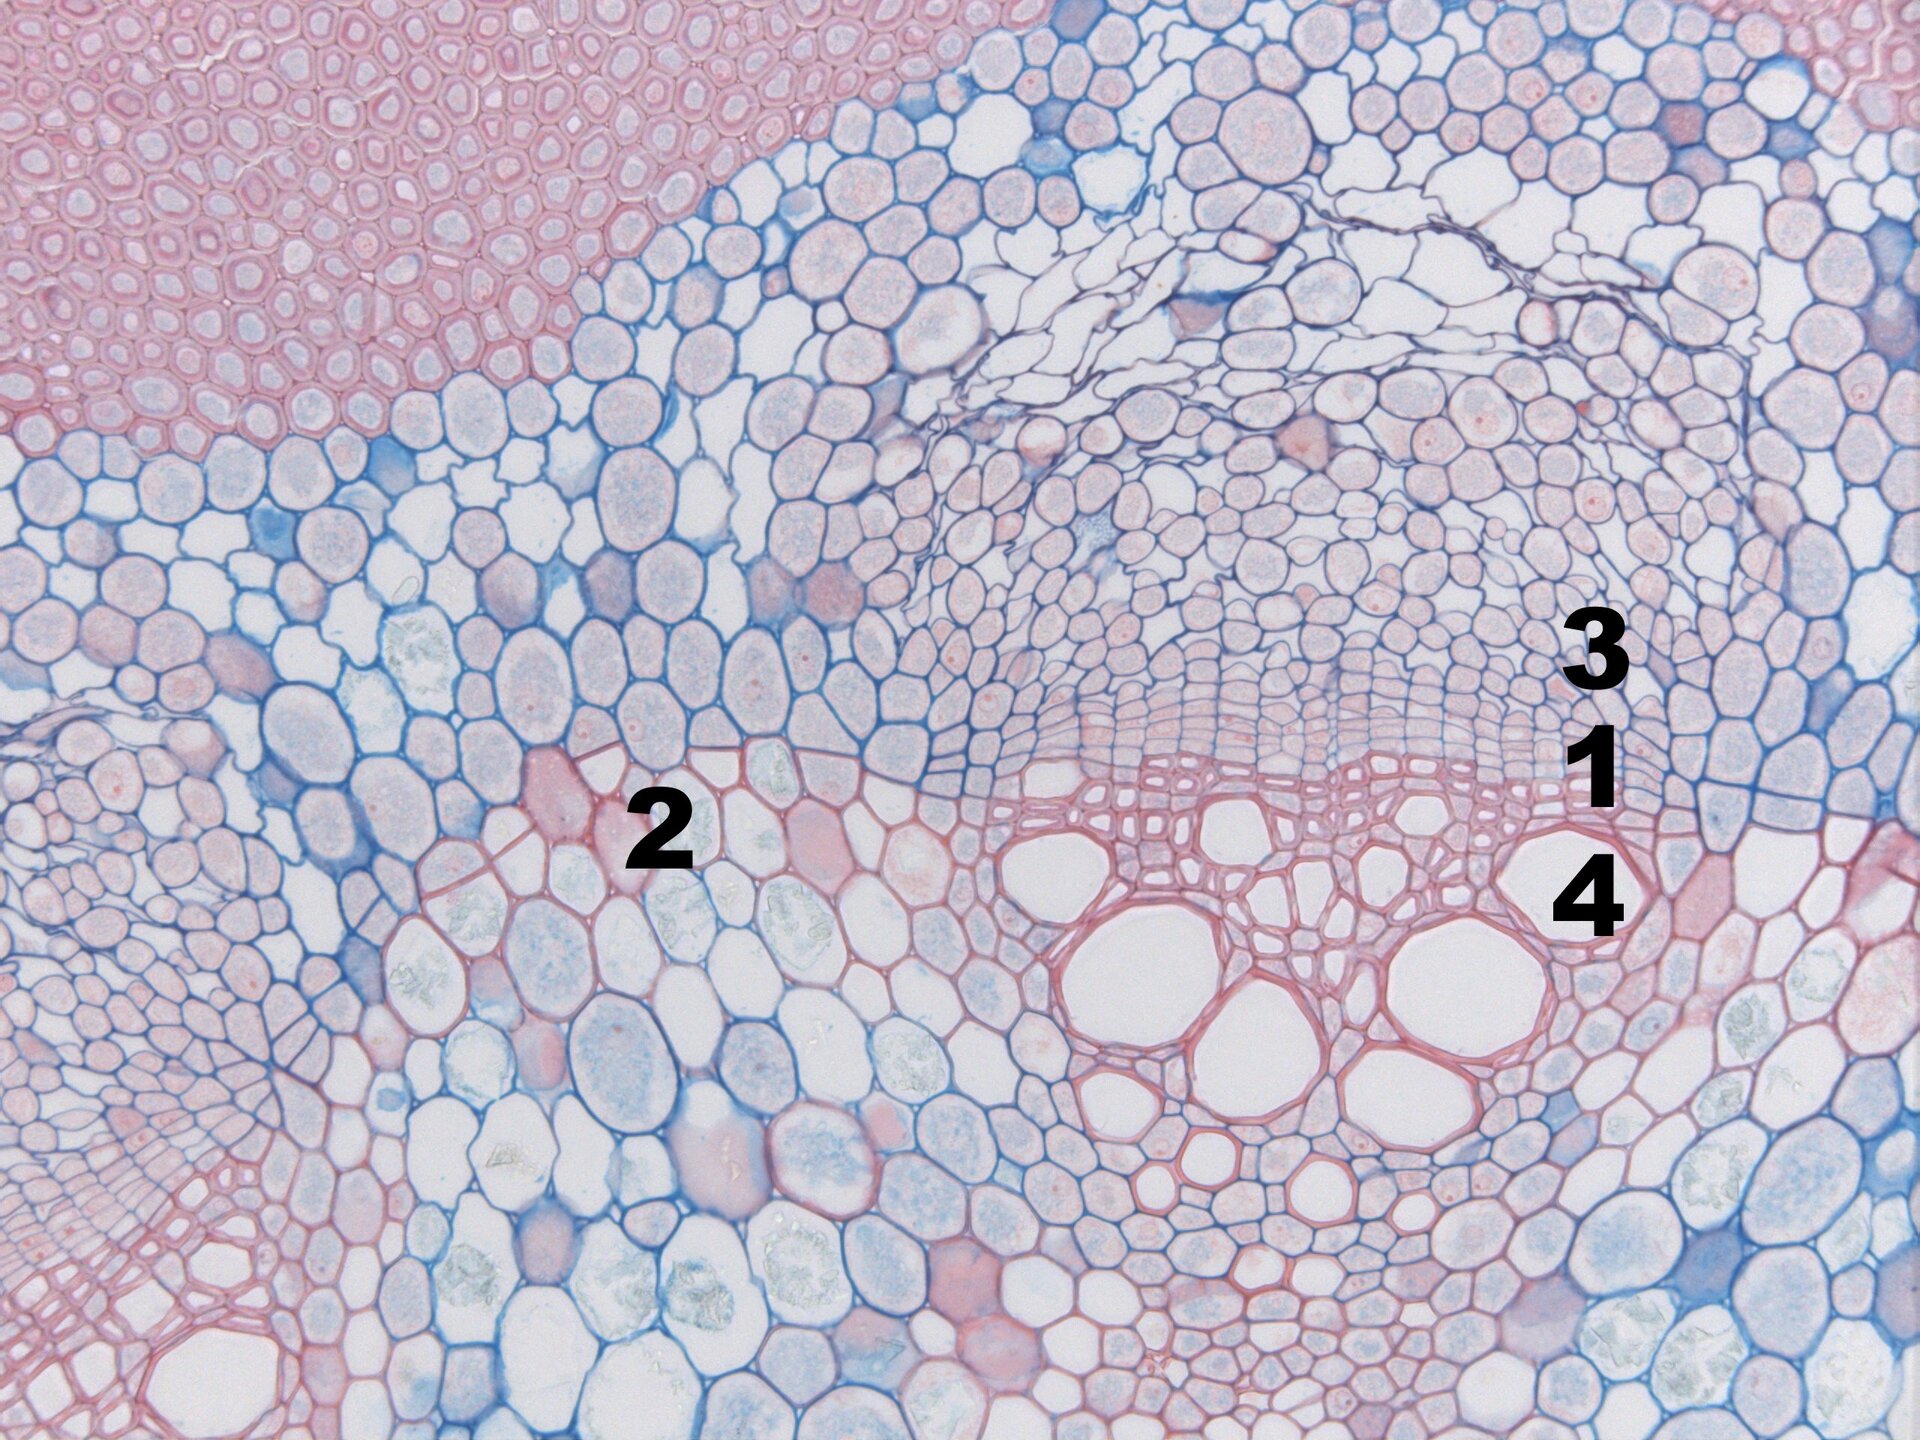 Grafika przedstawia przekrój poprzeczny przez jednoroczny pęd kokornaku wielkolistnego. Na grafice oznaczono takie elementy jak: kambium wiązkowe, kambium międzywiązkowe, metafloem, metaksylem. Komórki mają zróżnicowane, wielokątne kształty. Różnią się one wielkością. Największy jest metaksylem, natomiast najmniejsze są komórki wiązkowe.